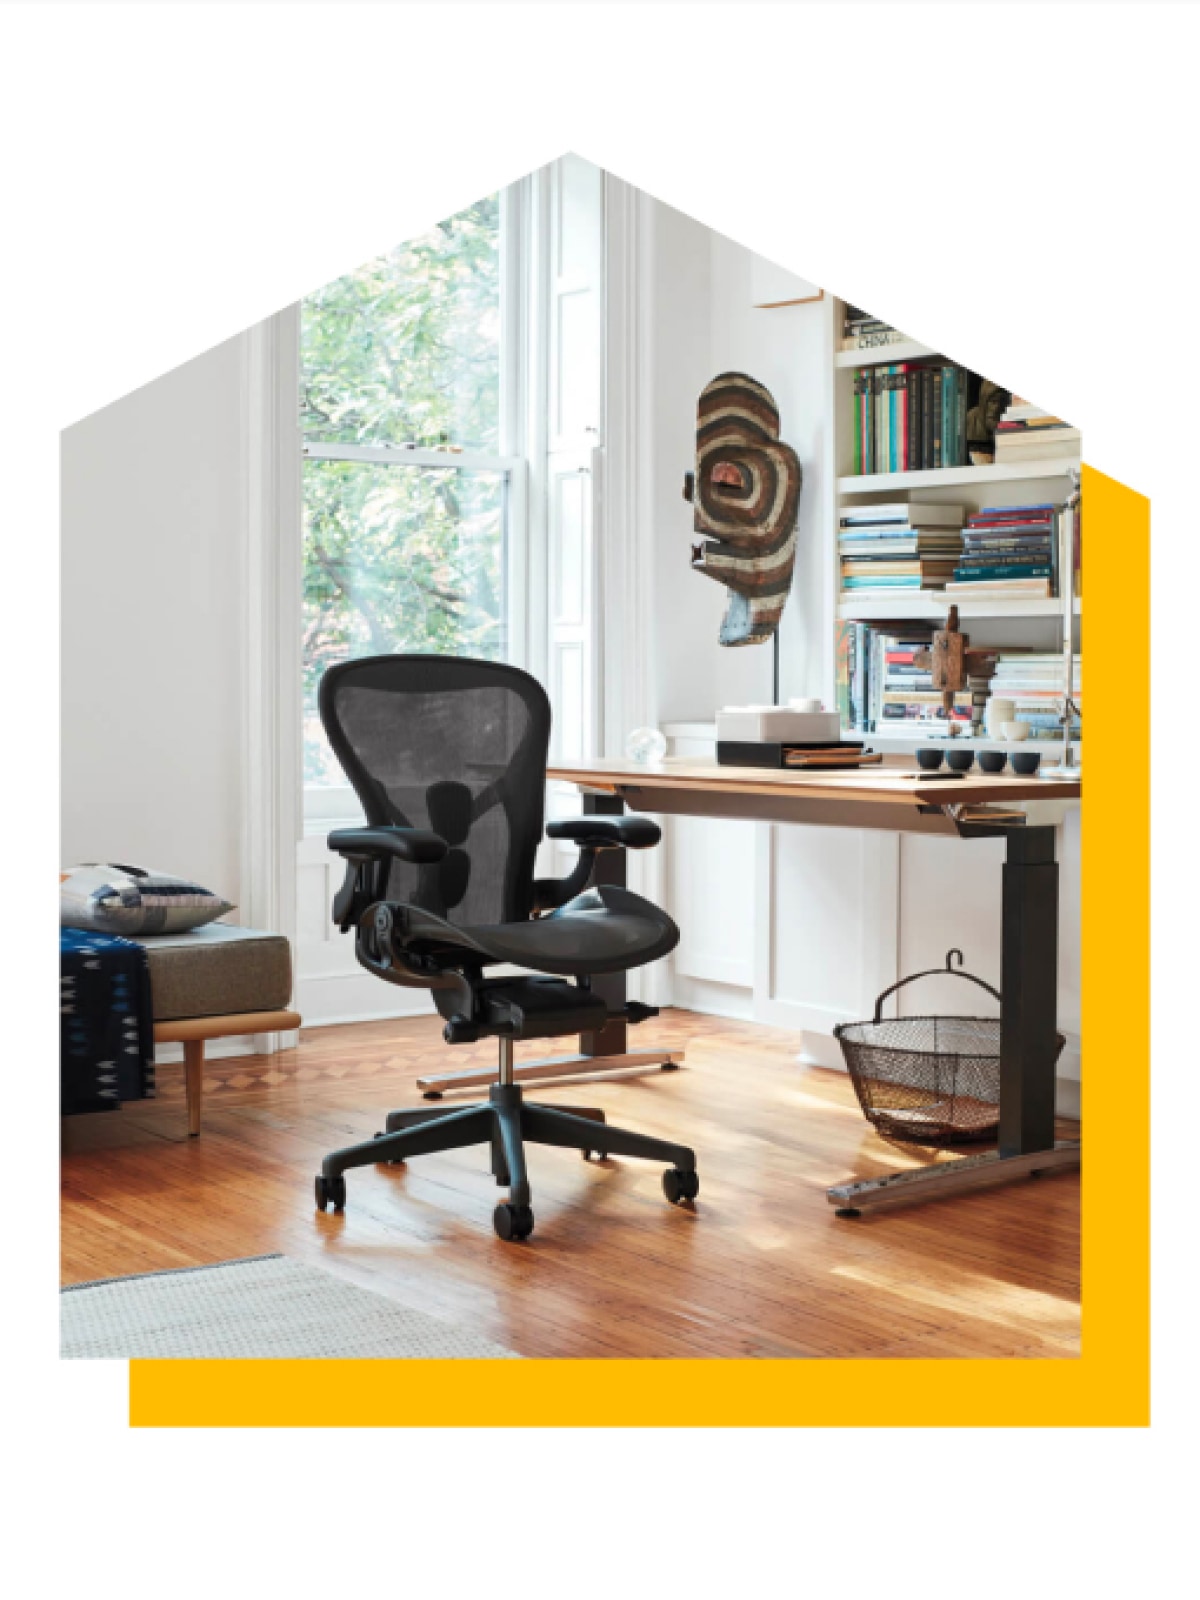 Siège Aeron Graphite à côté d'un bureau assis-debout. La photo est découpée en forme de maison et présente une ombre portée jaune vif.